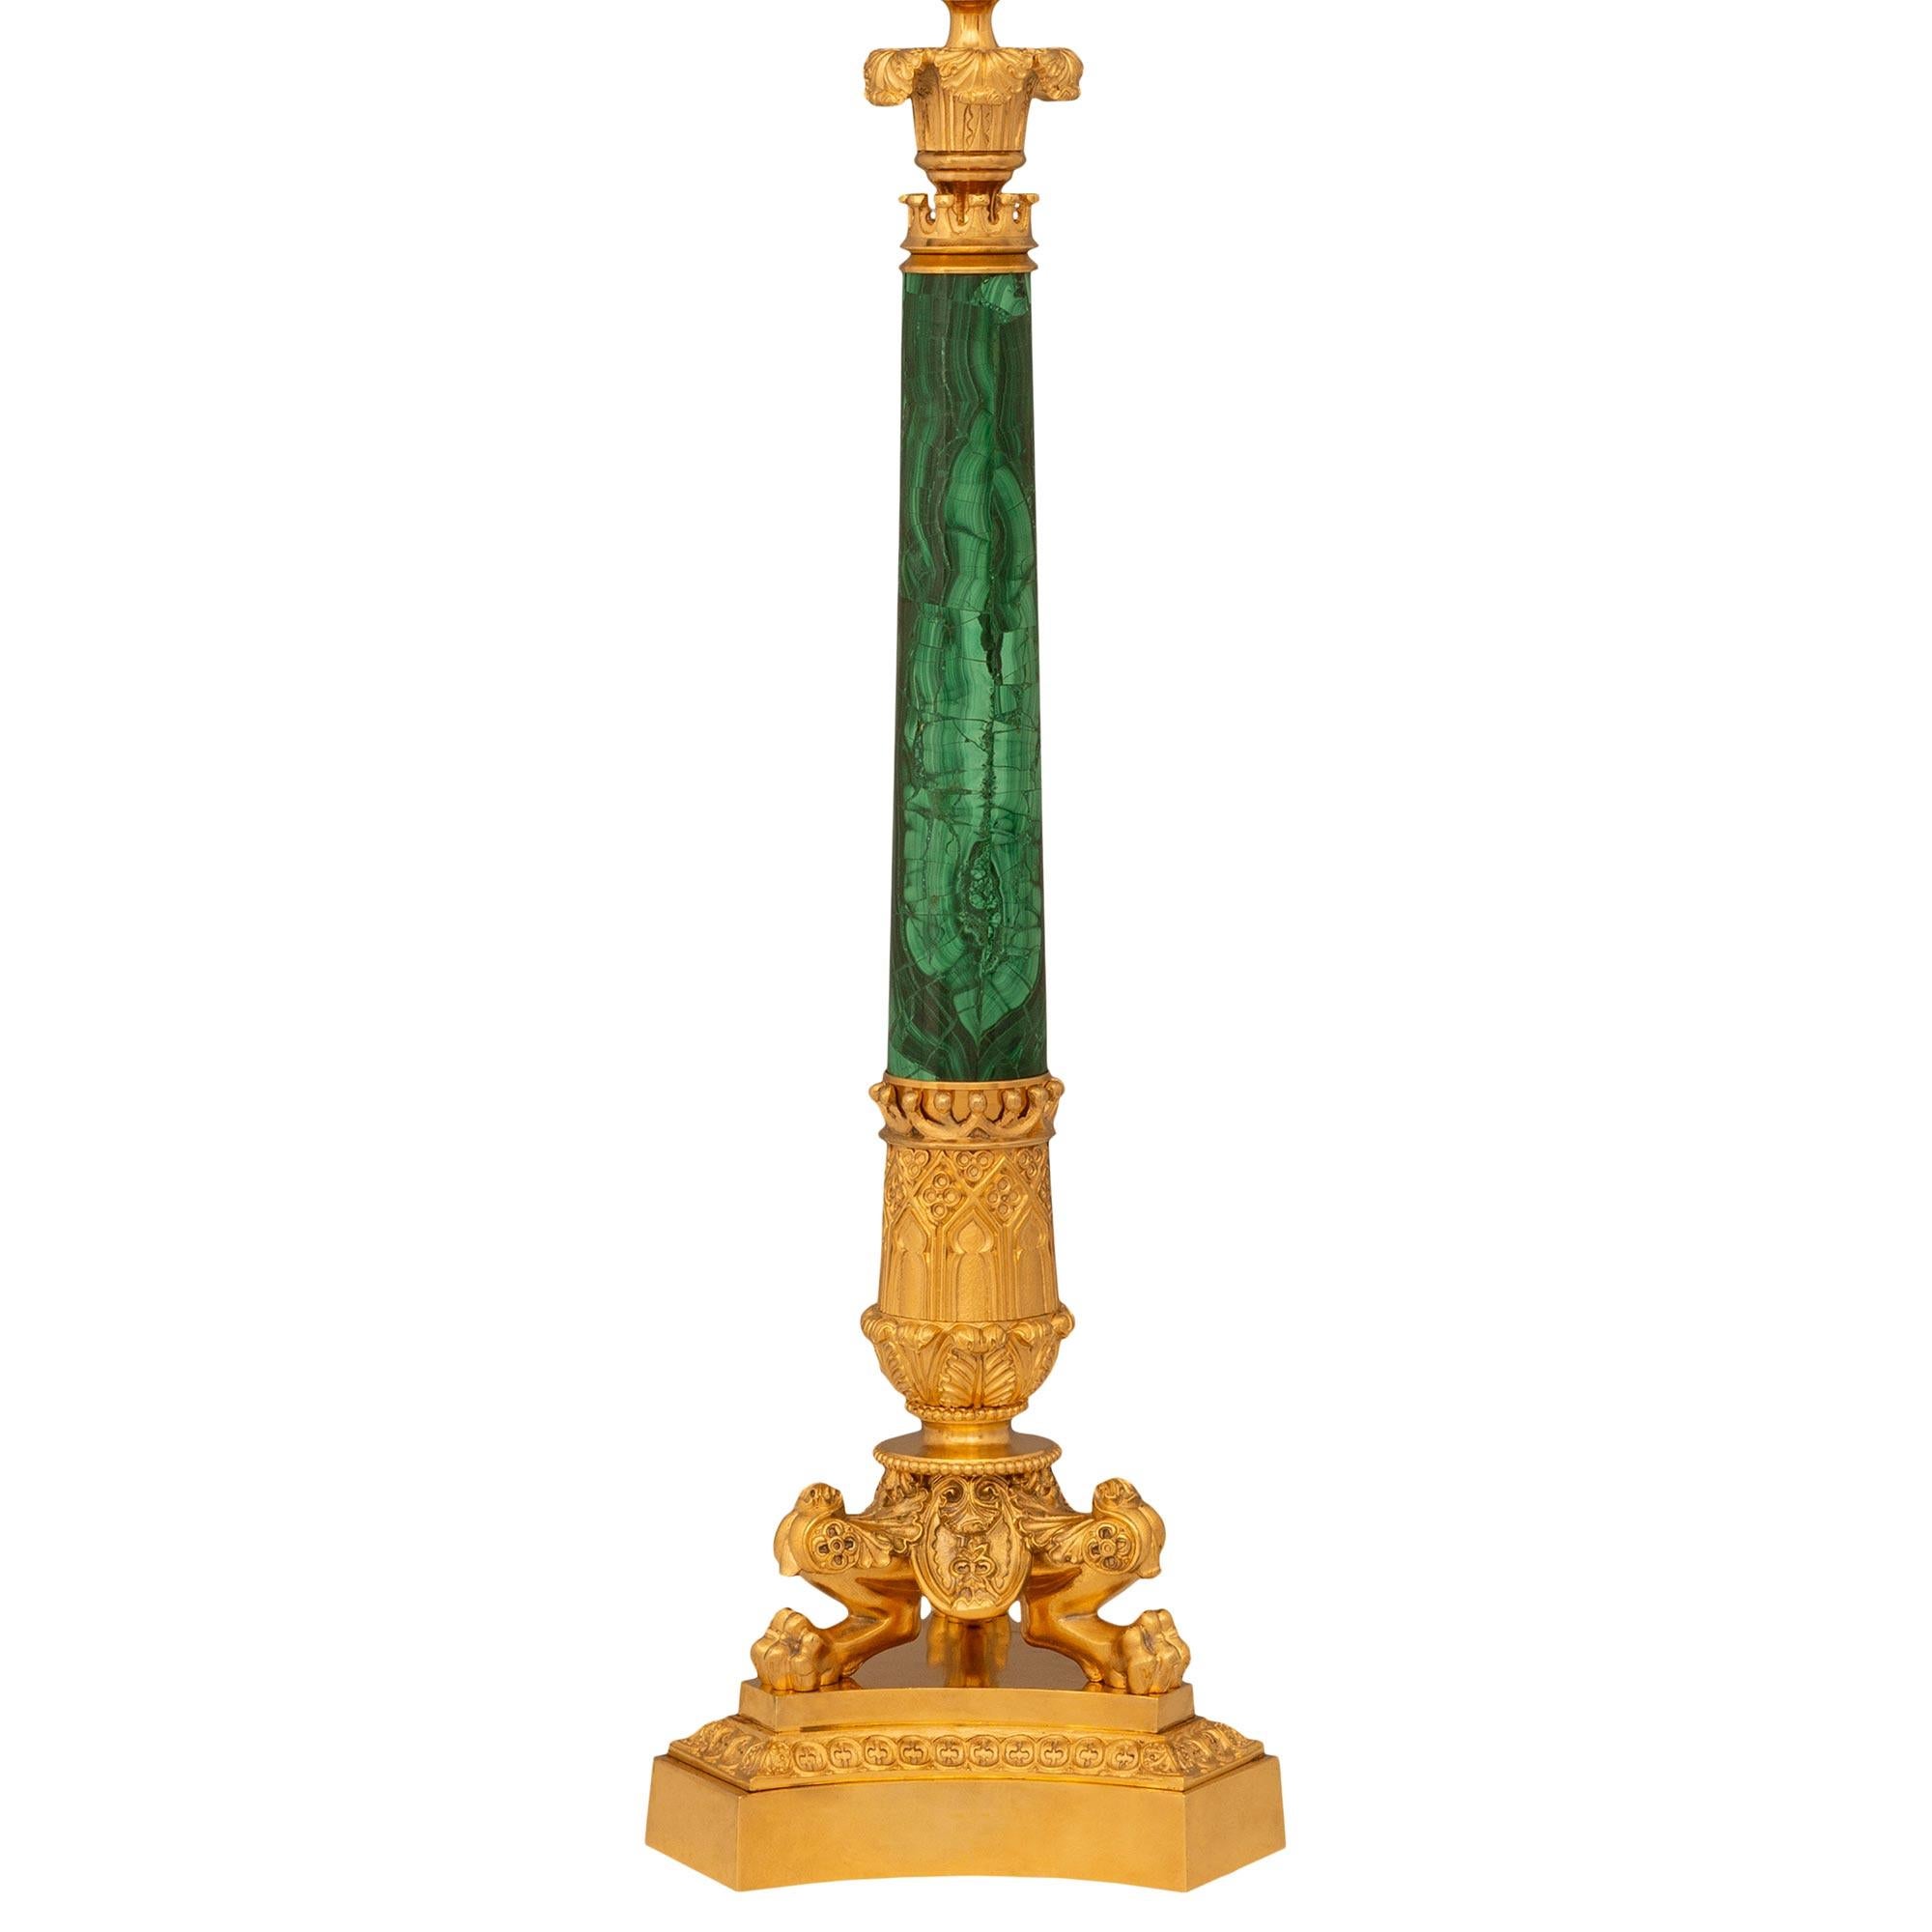 Une paire unique et très décorée de lampes en bronze doré et en malachite de Charles X du XIXe siècle. Chaque lampe est surmontée d'une base concave en bronze doré à trois faces, ornée d'une bande tachetée de motifs de denticules. Au-dessus du